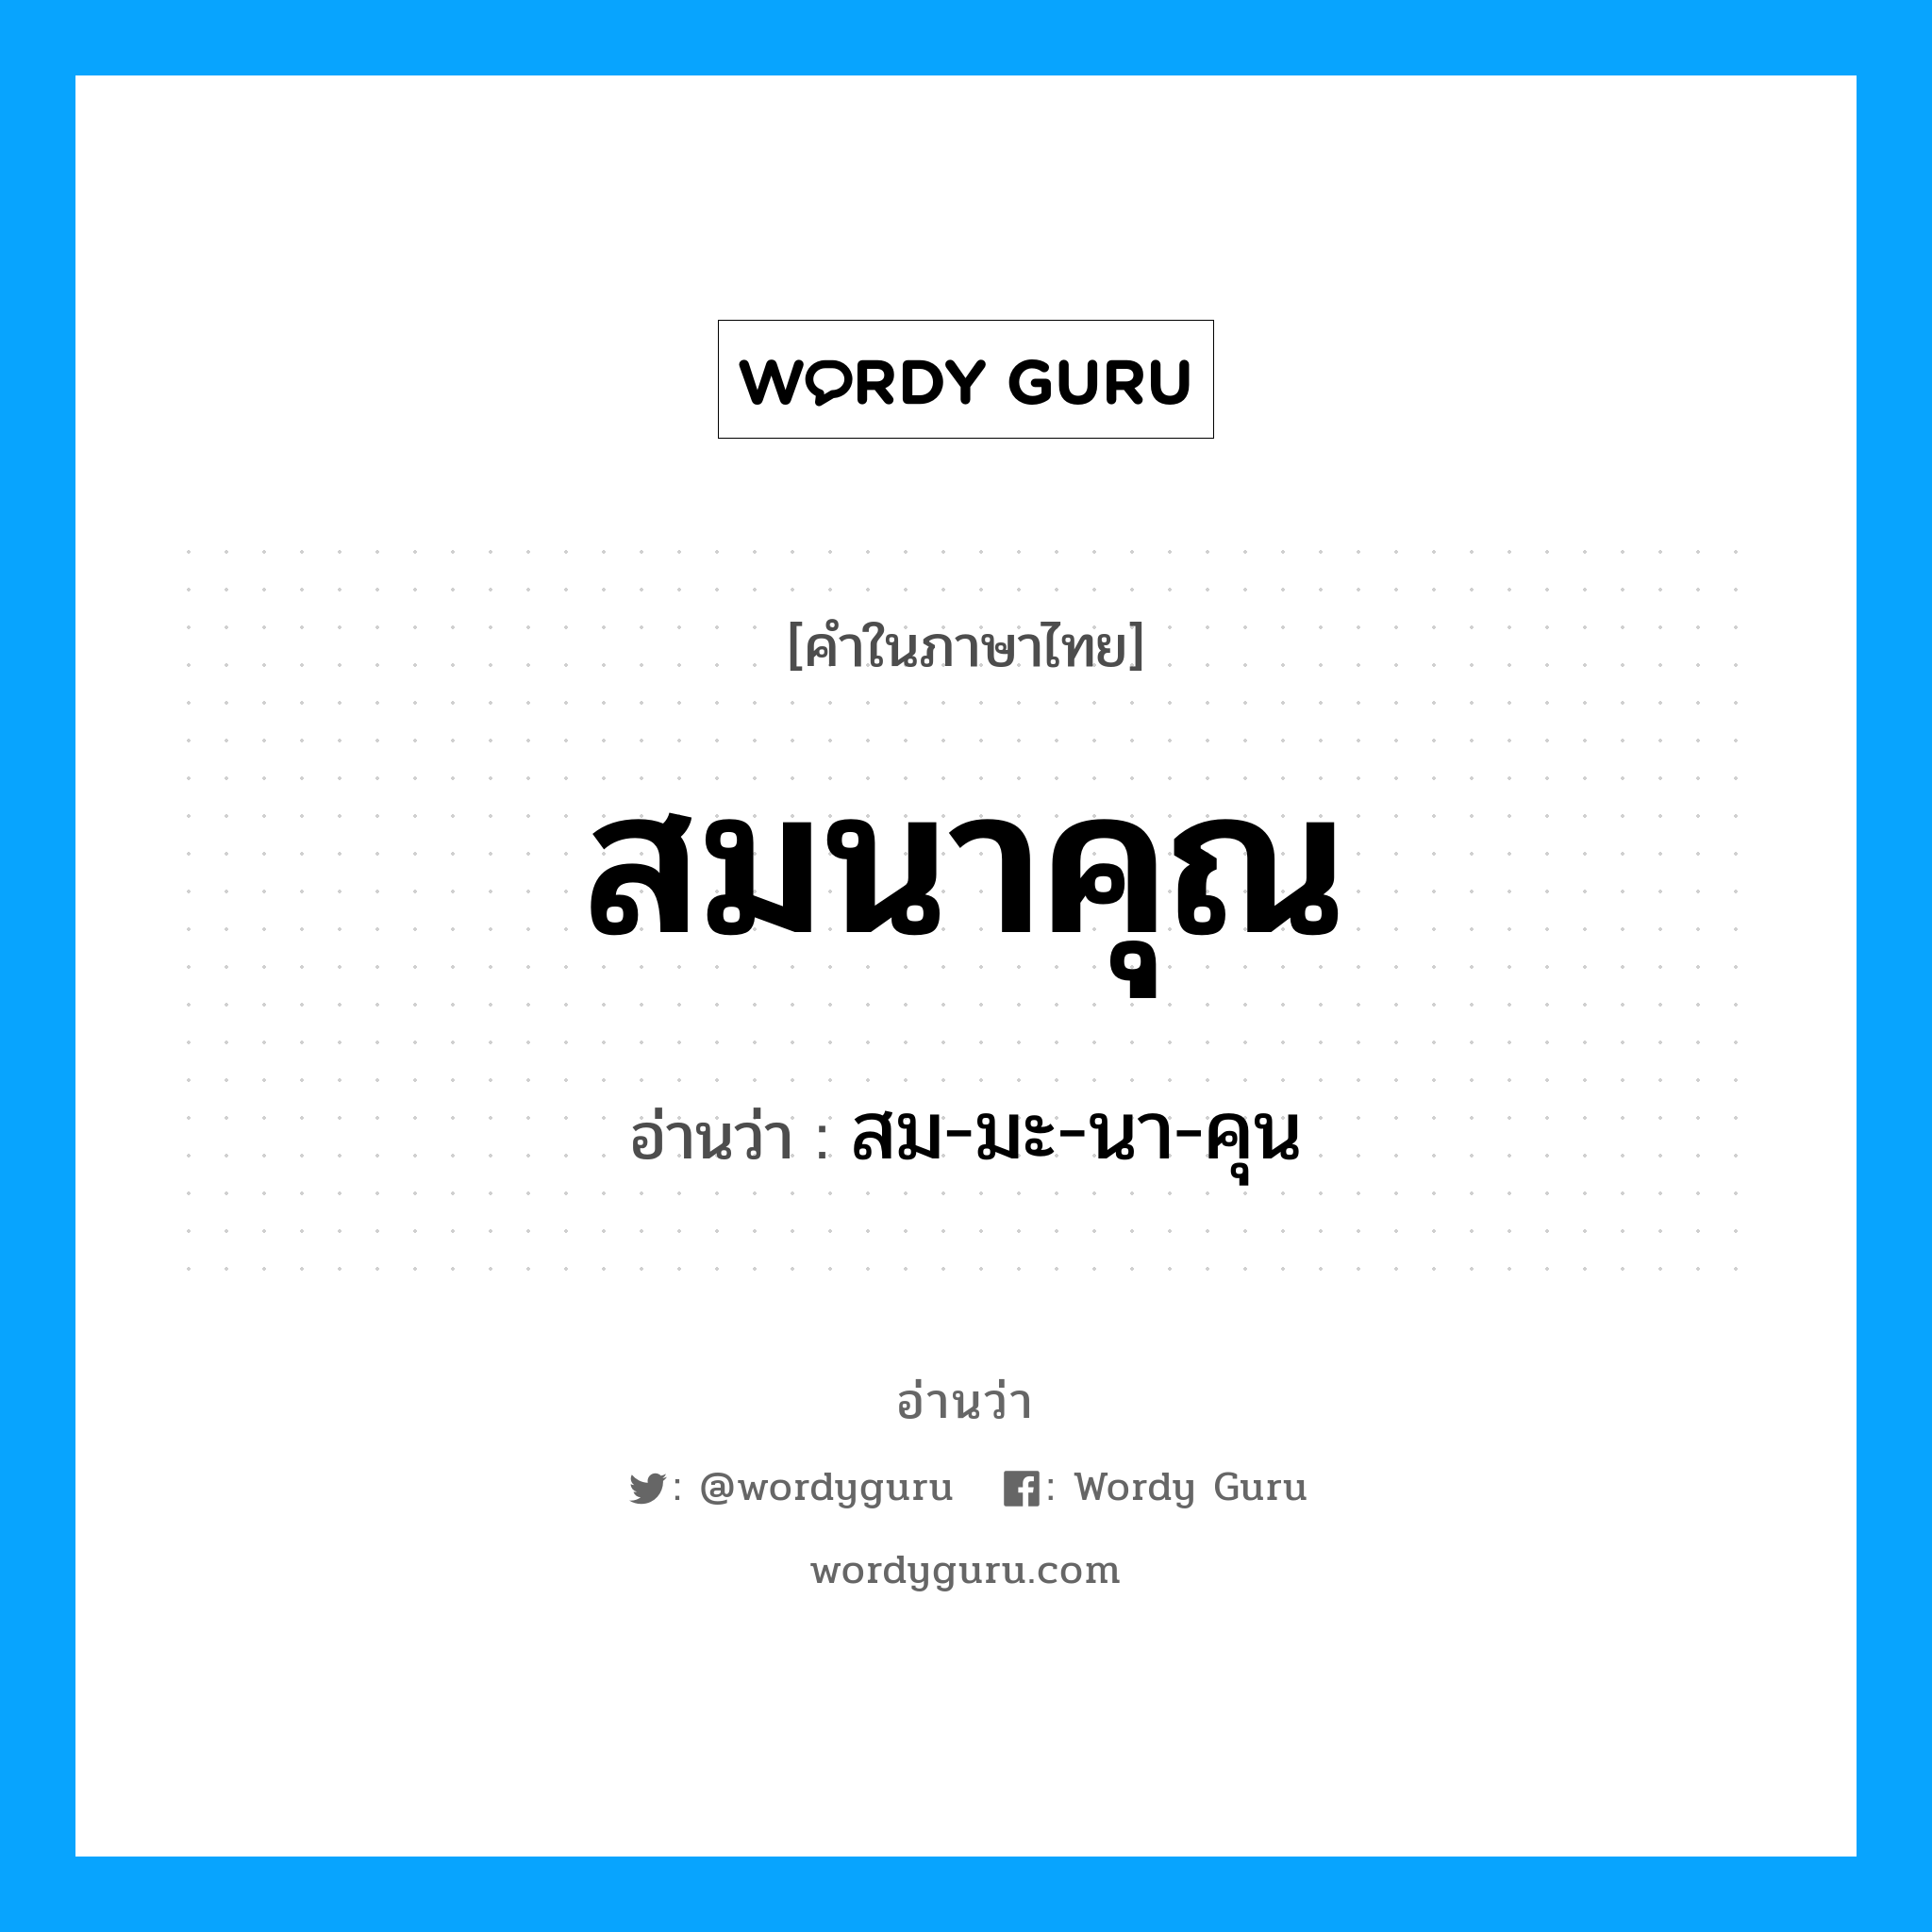 สม-มะ-นา-คุน เป็นคำอ่านของคำไหน?, คำในภาษาไทย สม-มะ-นา-คุน อ่านว่า สมนาคุณ